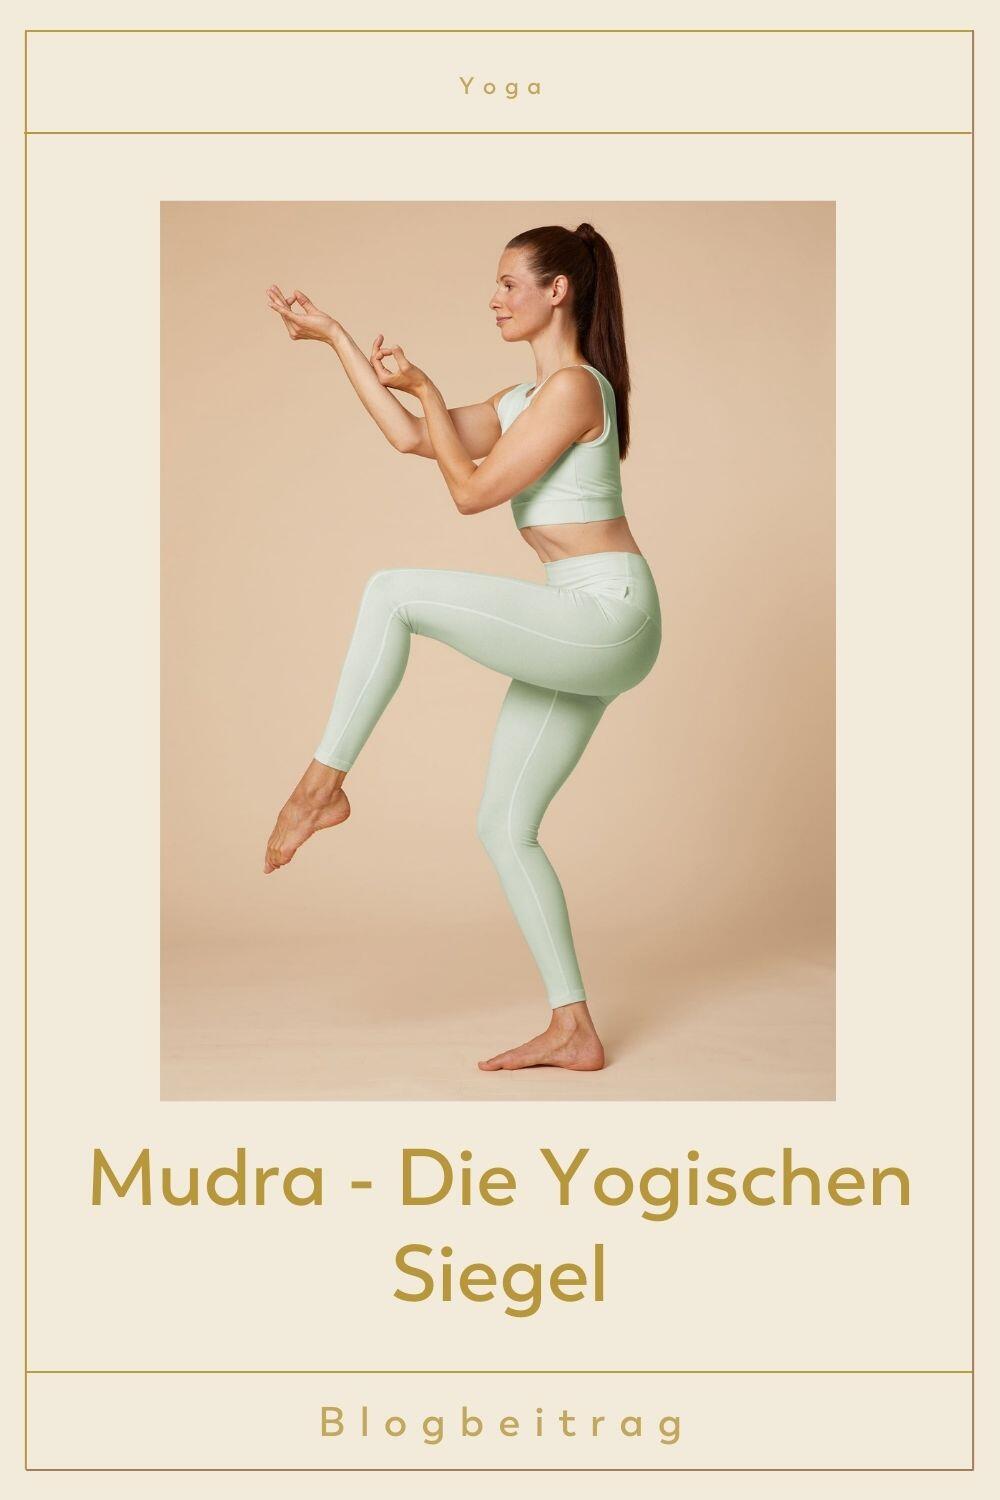 Titelbild zum Blogbeitrag Mudra - Die Yogischen Siegel